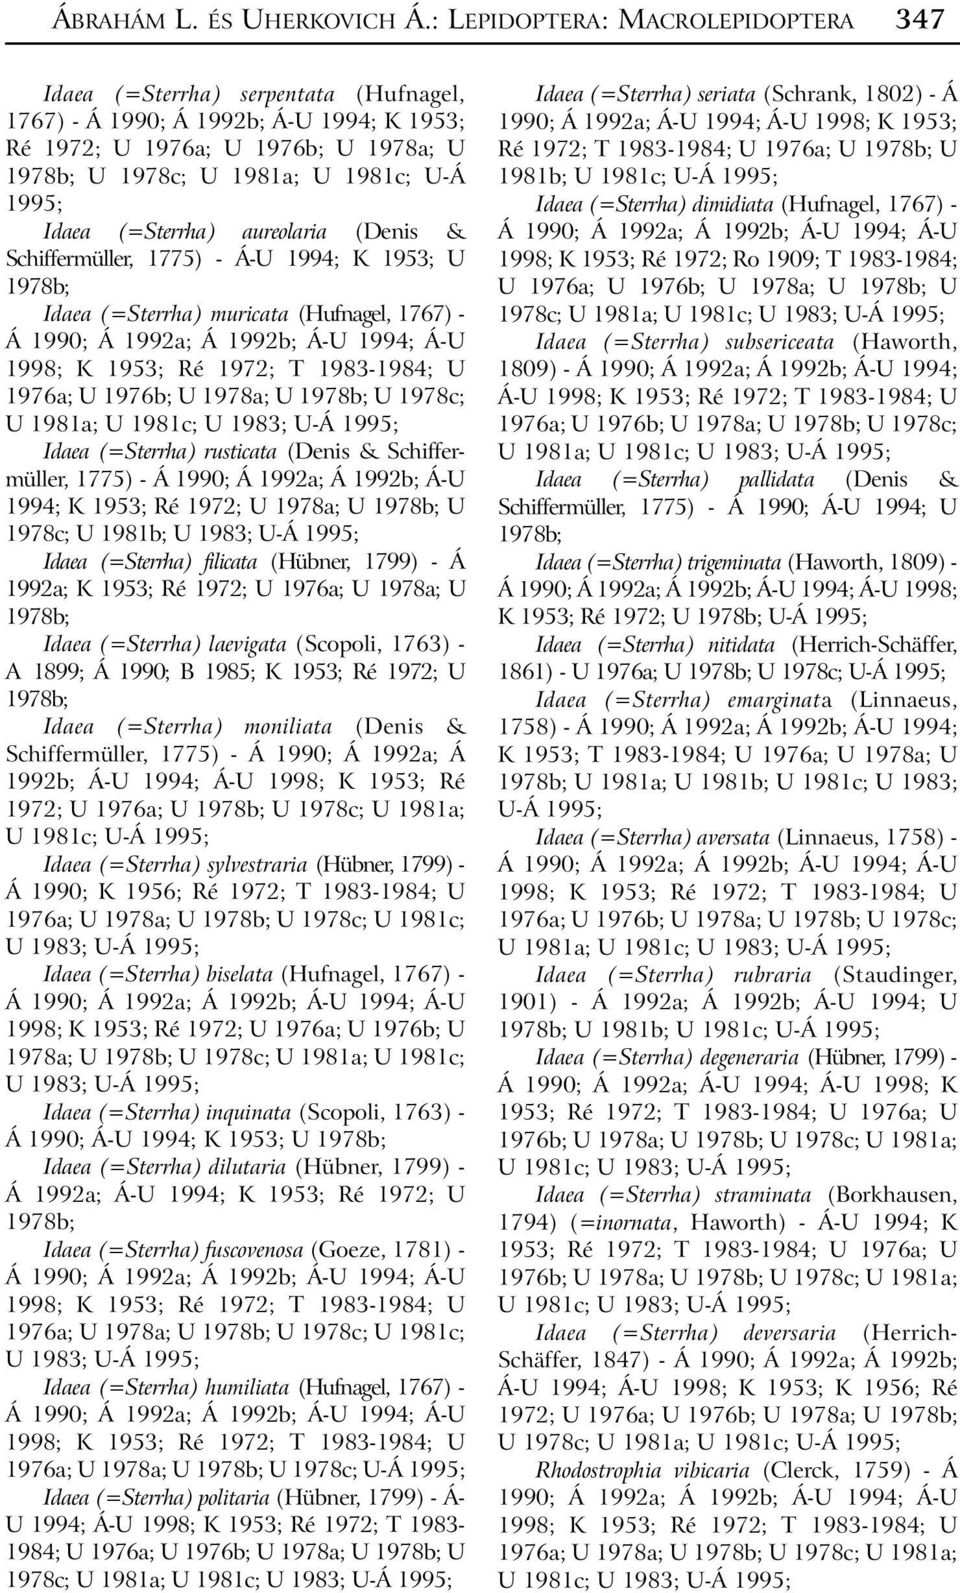 Idaea (=Sterrha) aureolaria (Denis & Schiffermüller, 1775) - Á-U 1994; K 1953; U 1978b; Idaea (=Sterrha) muricata (Hufnagel, 1767) - Á U 1981a; U 1981c; U 1983; Idaea (=Sterrha) rusticata (Denis &